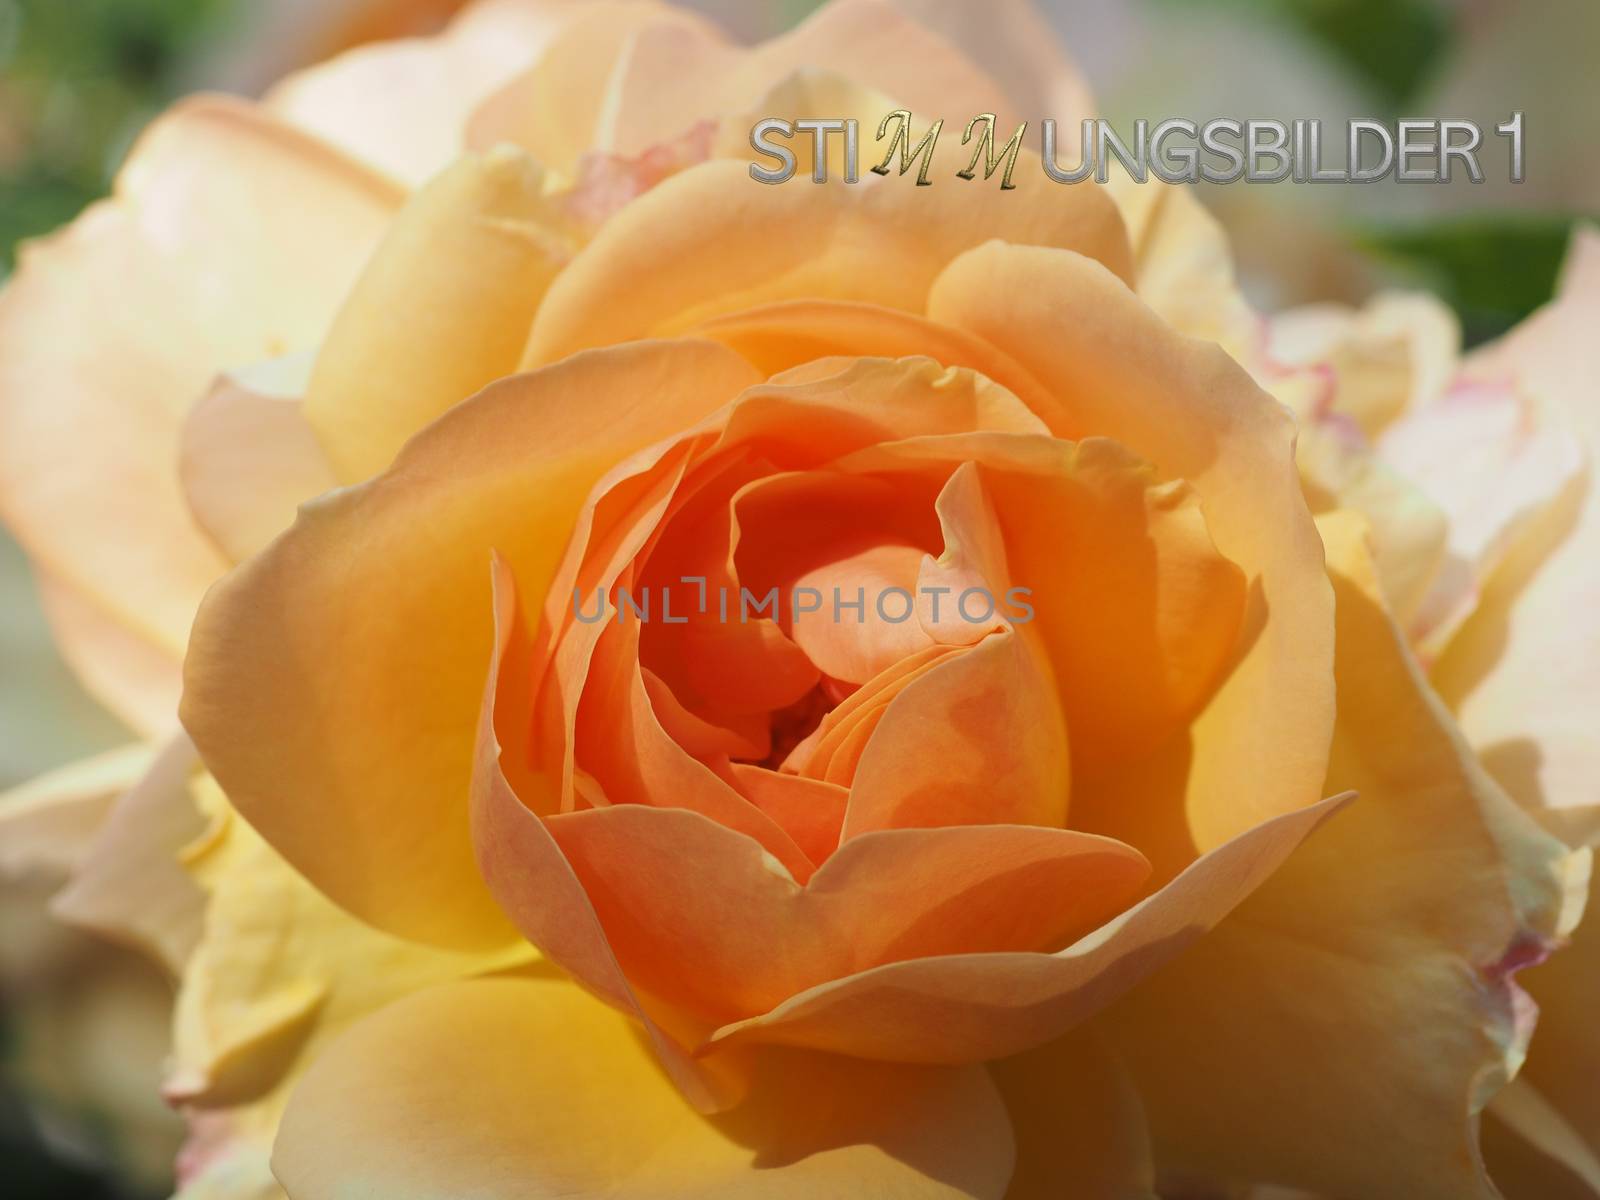 Macro of a beautiful orange rose